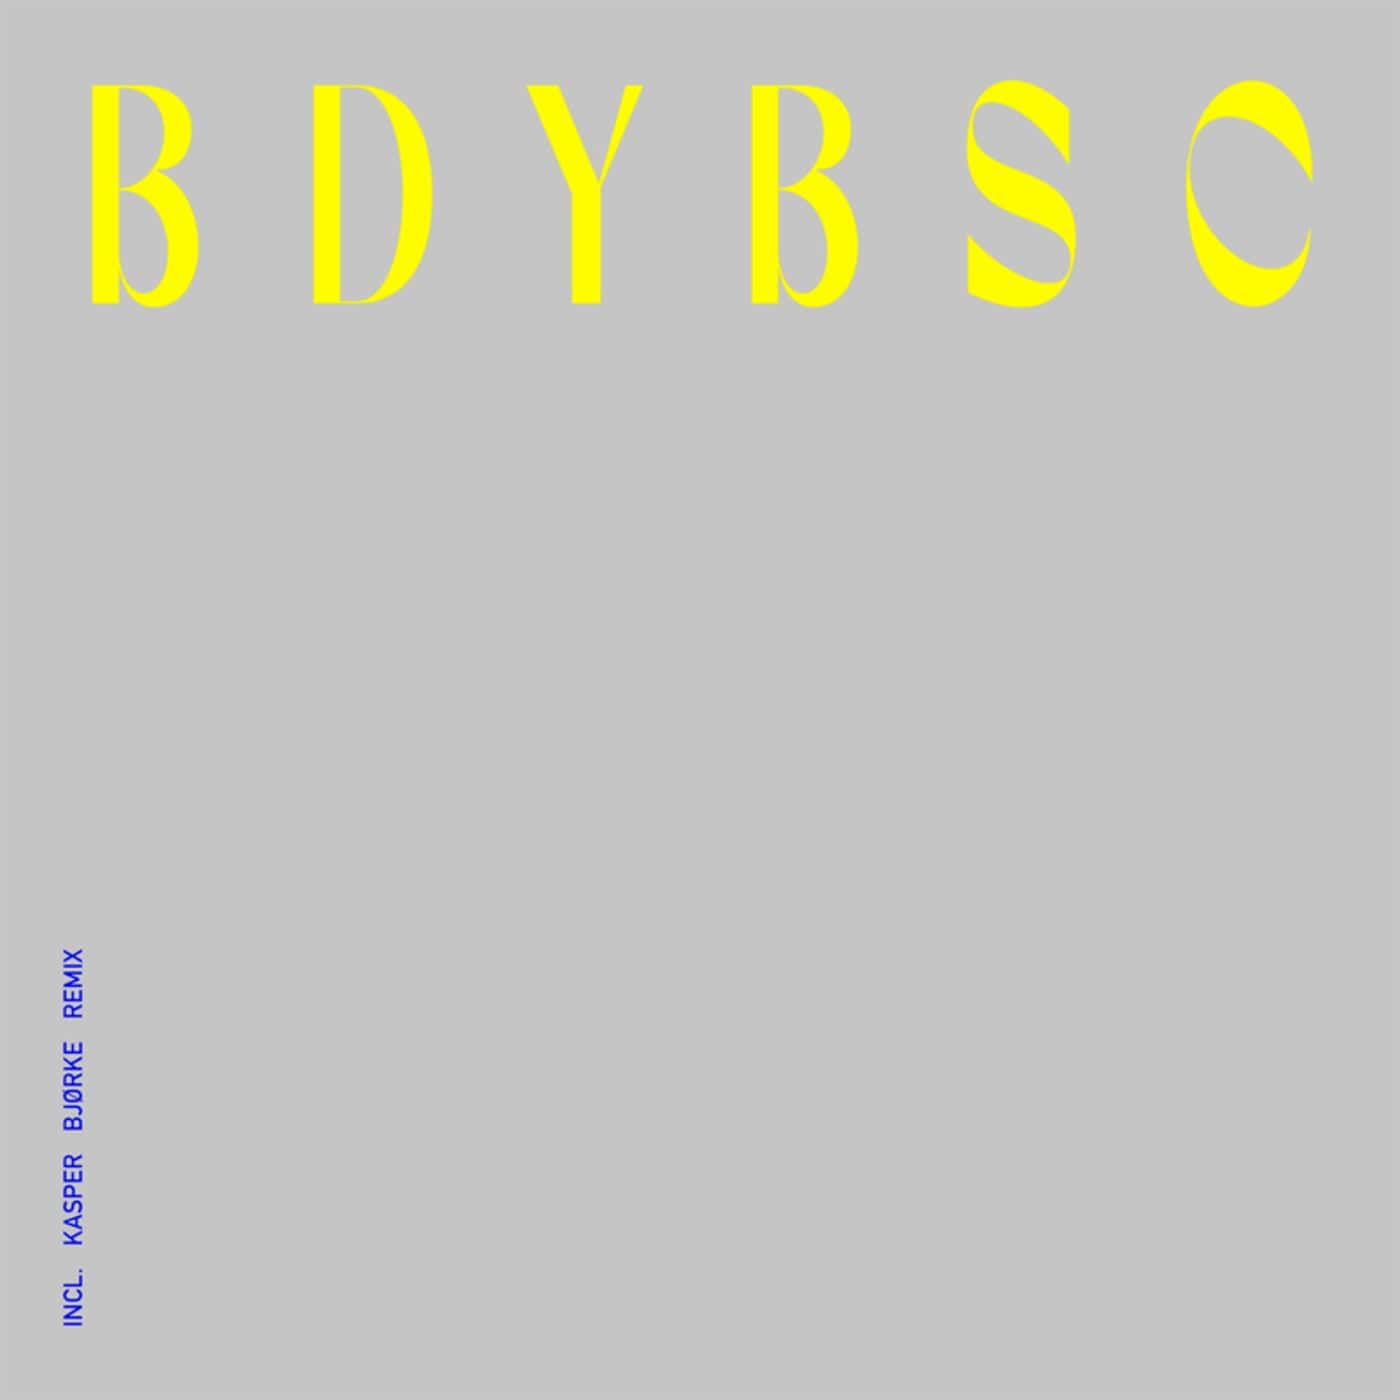 image cover: Brynjolfur, Prom Night - BDYBSC (+Kasper Bjørke Remix) / PNR005